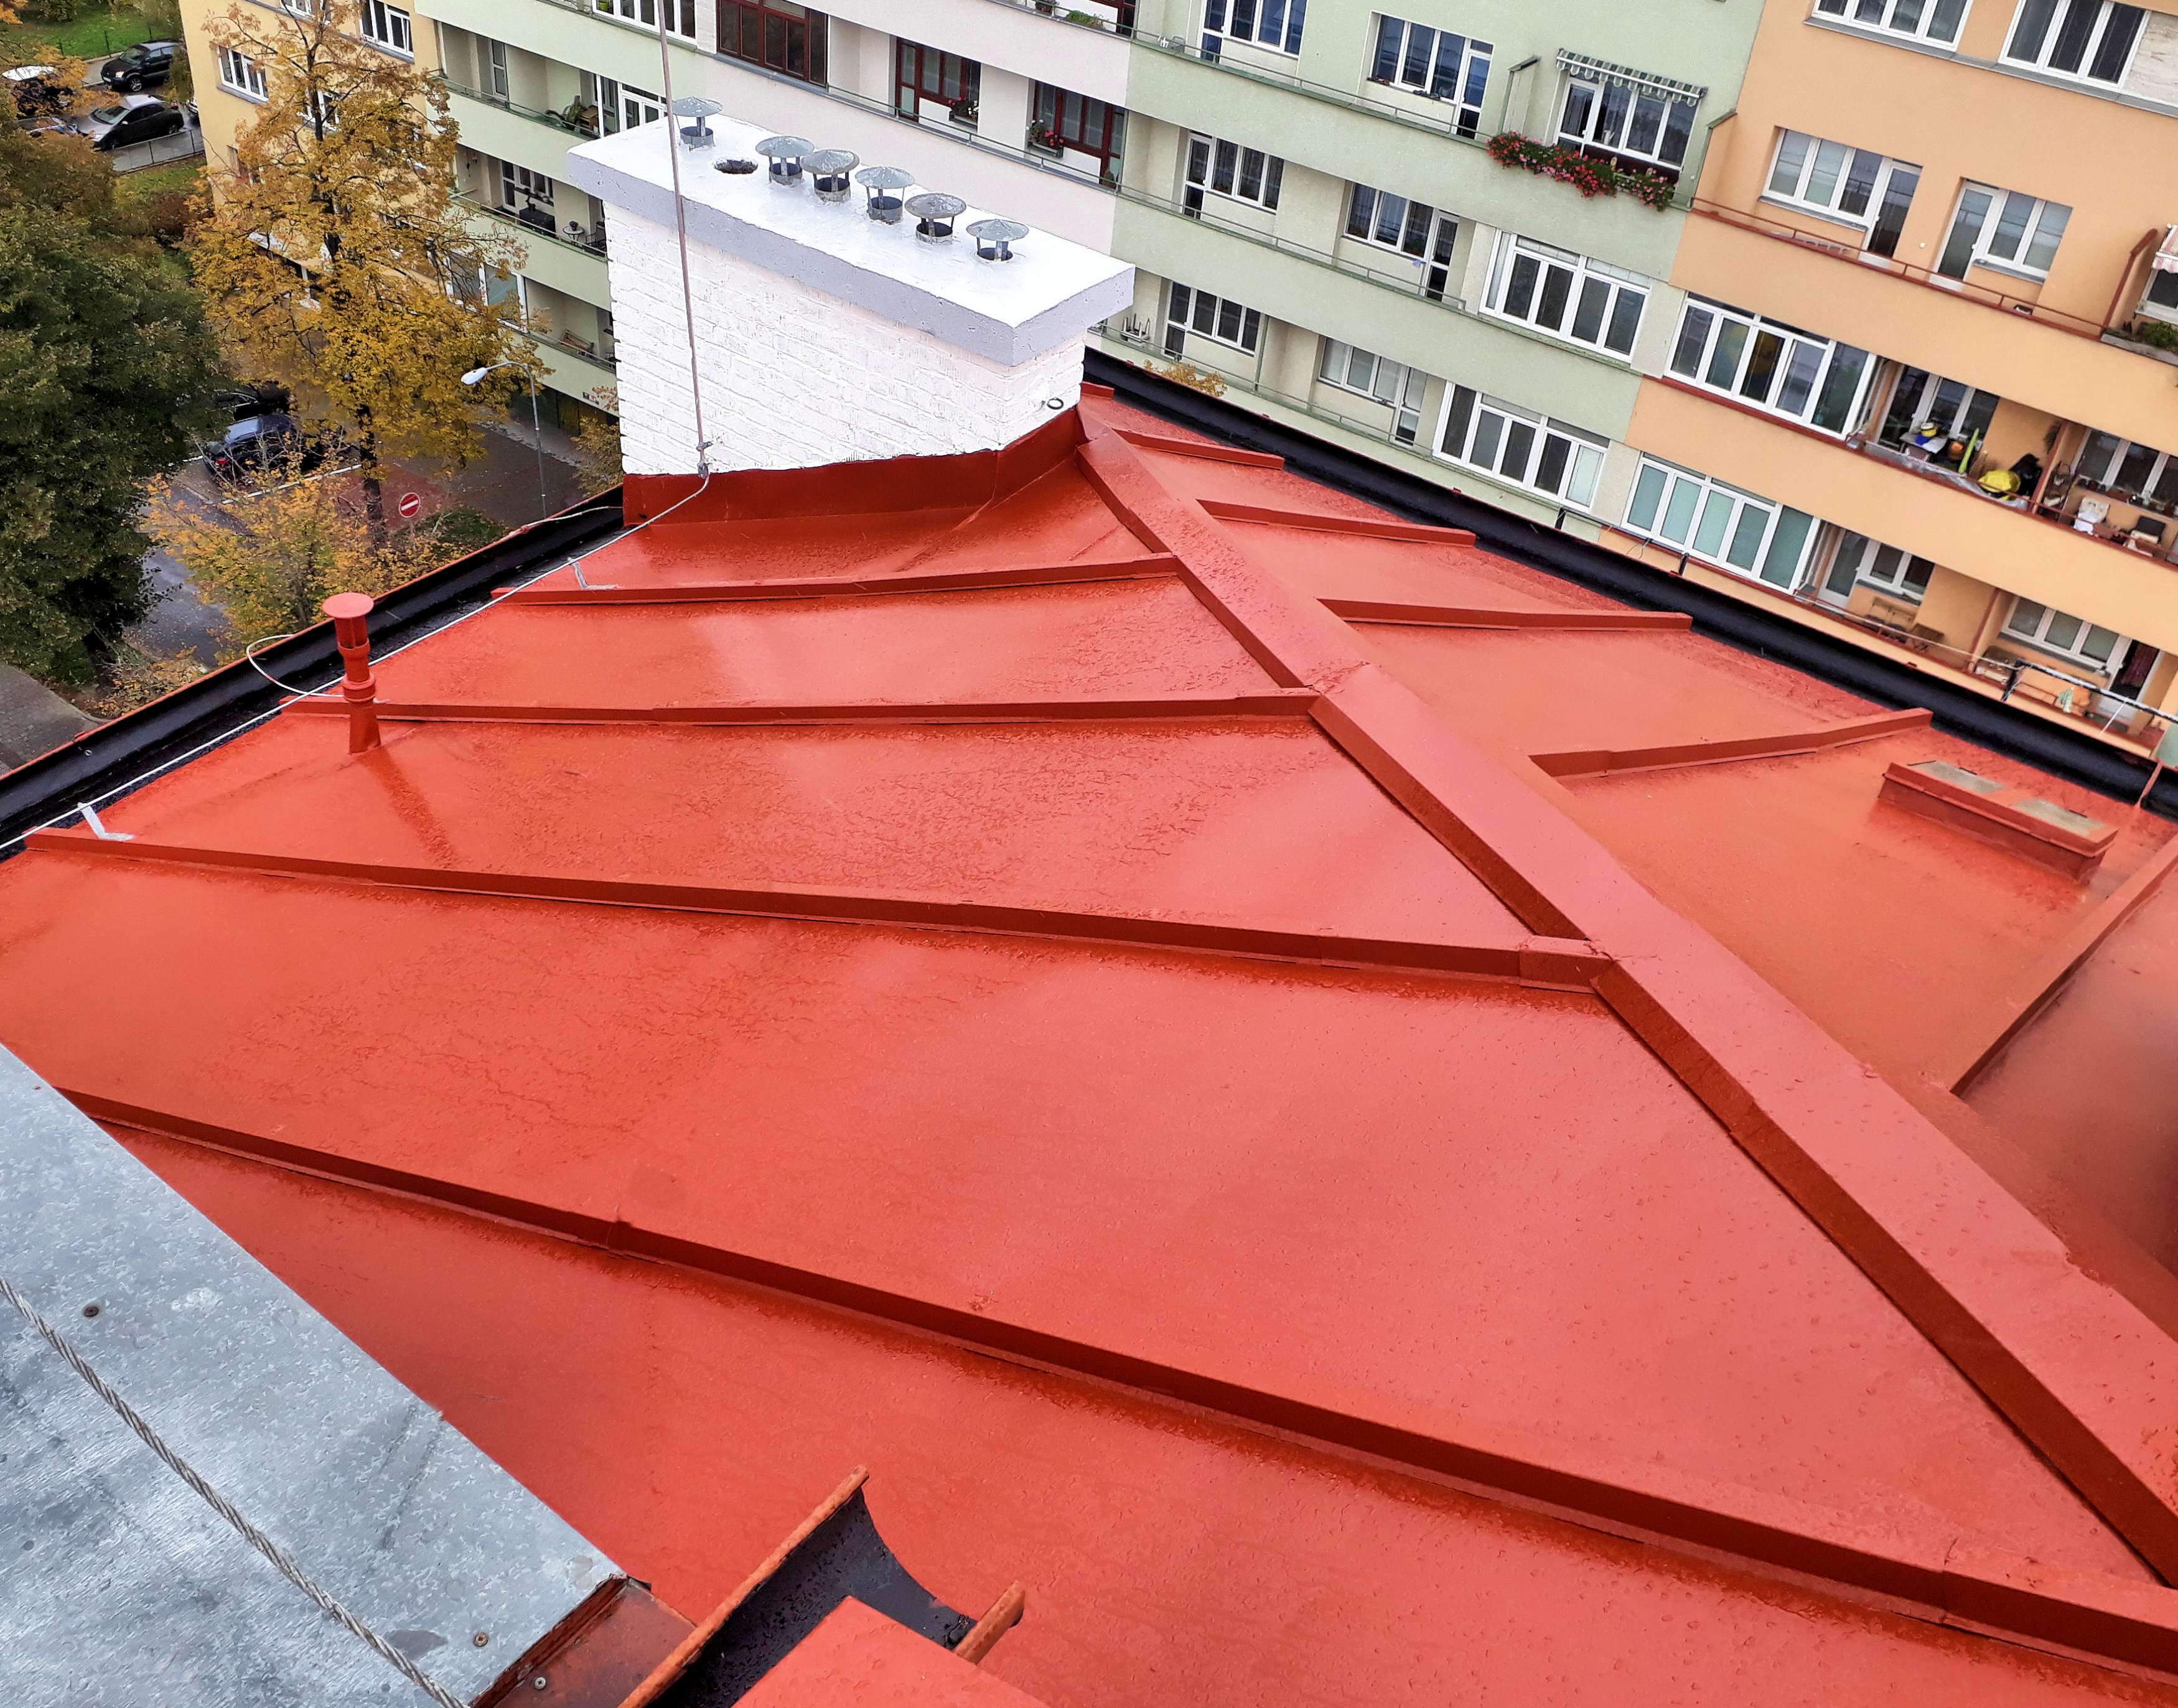 Ochranný nátěr na střechu - oprava střechy nátěr Kotlářská 35a, Brno